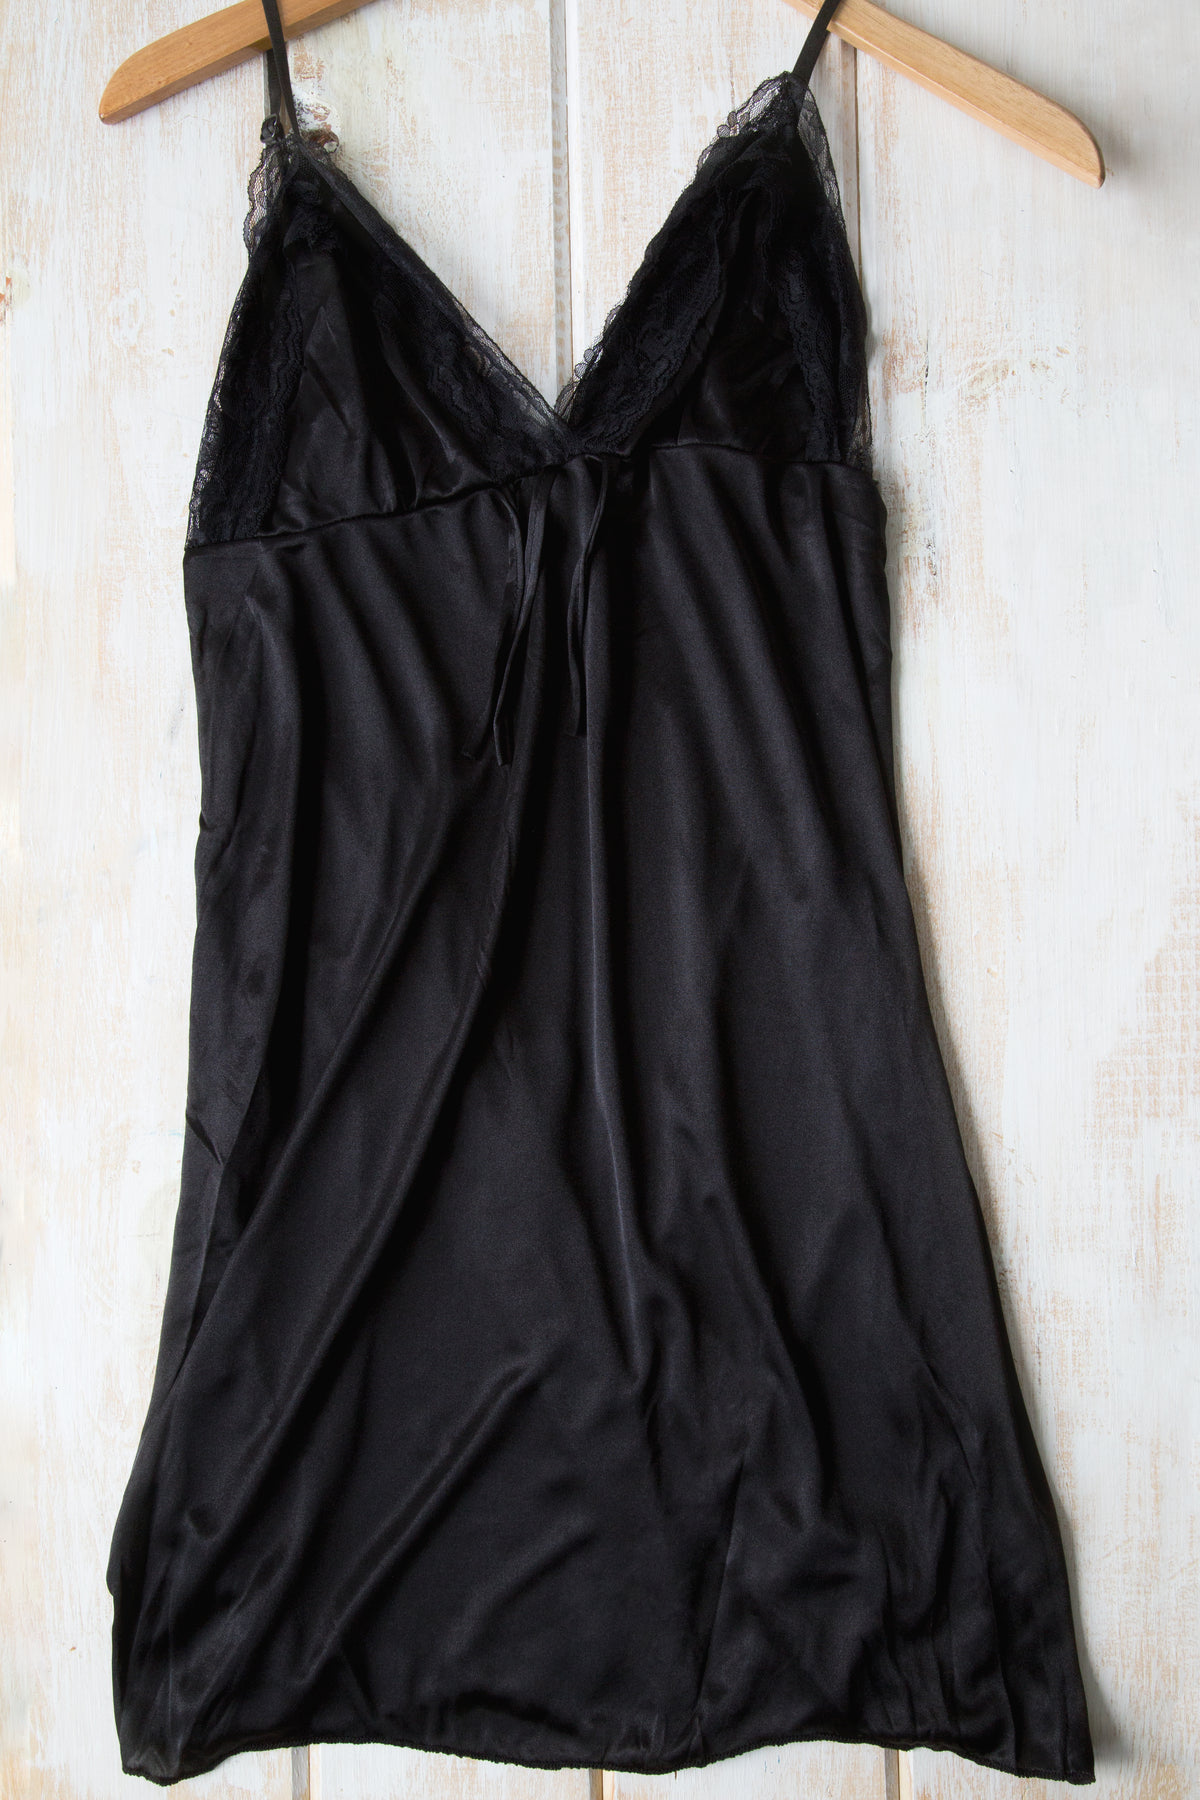 black slip lingerie